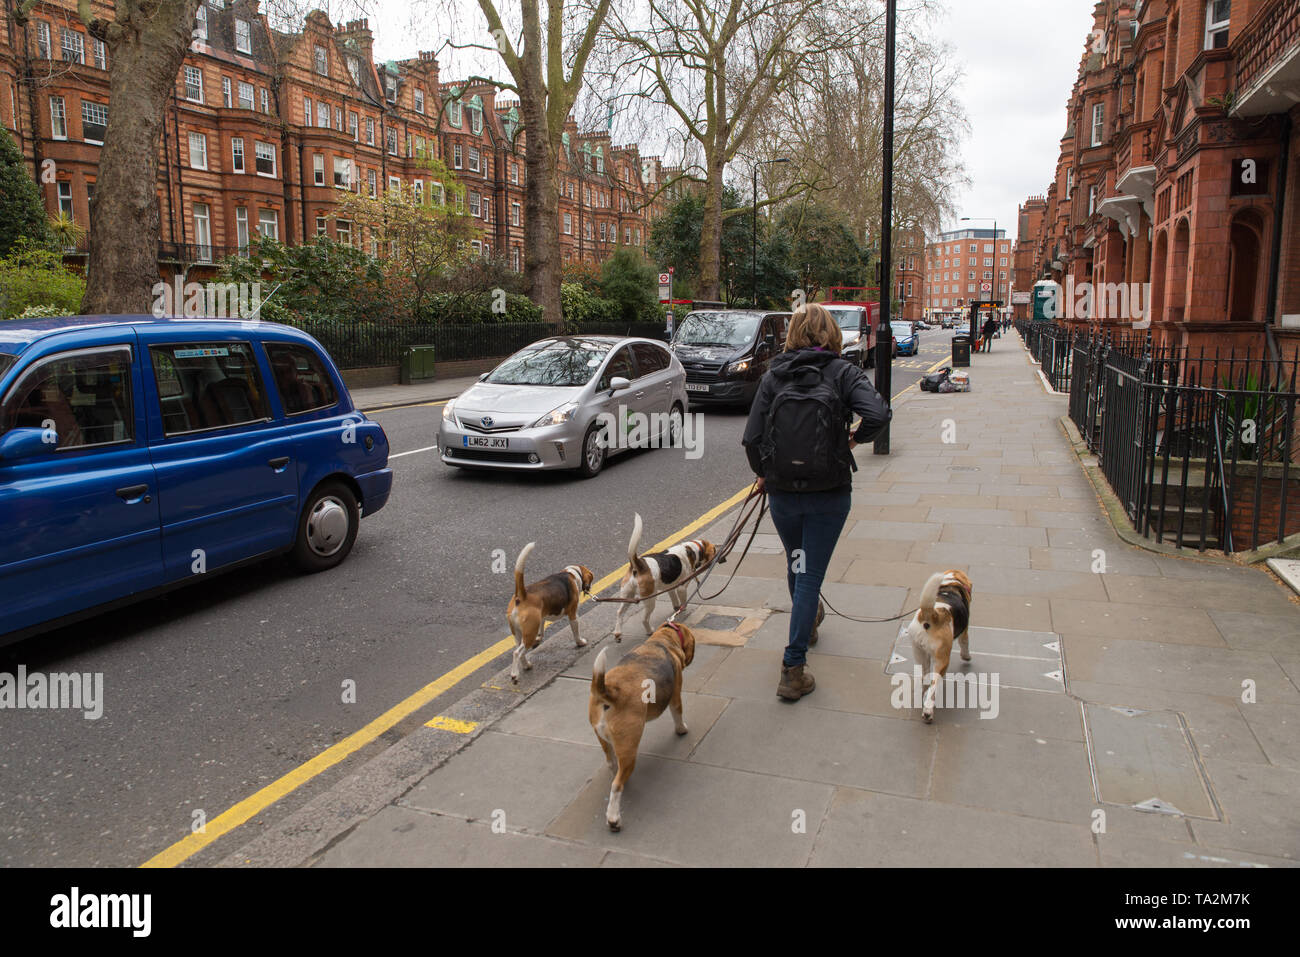 Eine Frau, die mit 4 Hunden, Chelsea, London, Vereinigtes Königreich geht. / A woman walking with 4 dogs, Chelsea, London, United Kingdom. Stock Photo